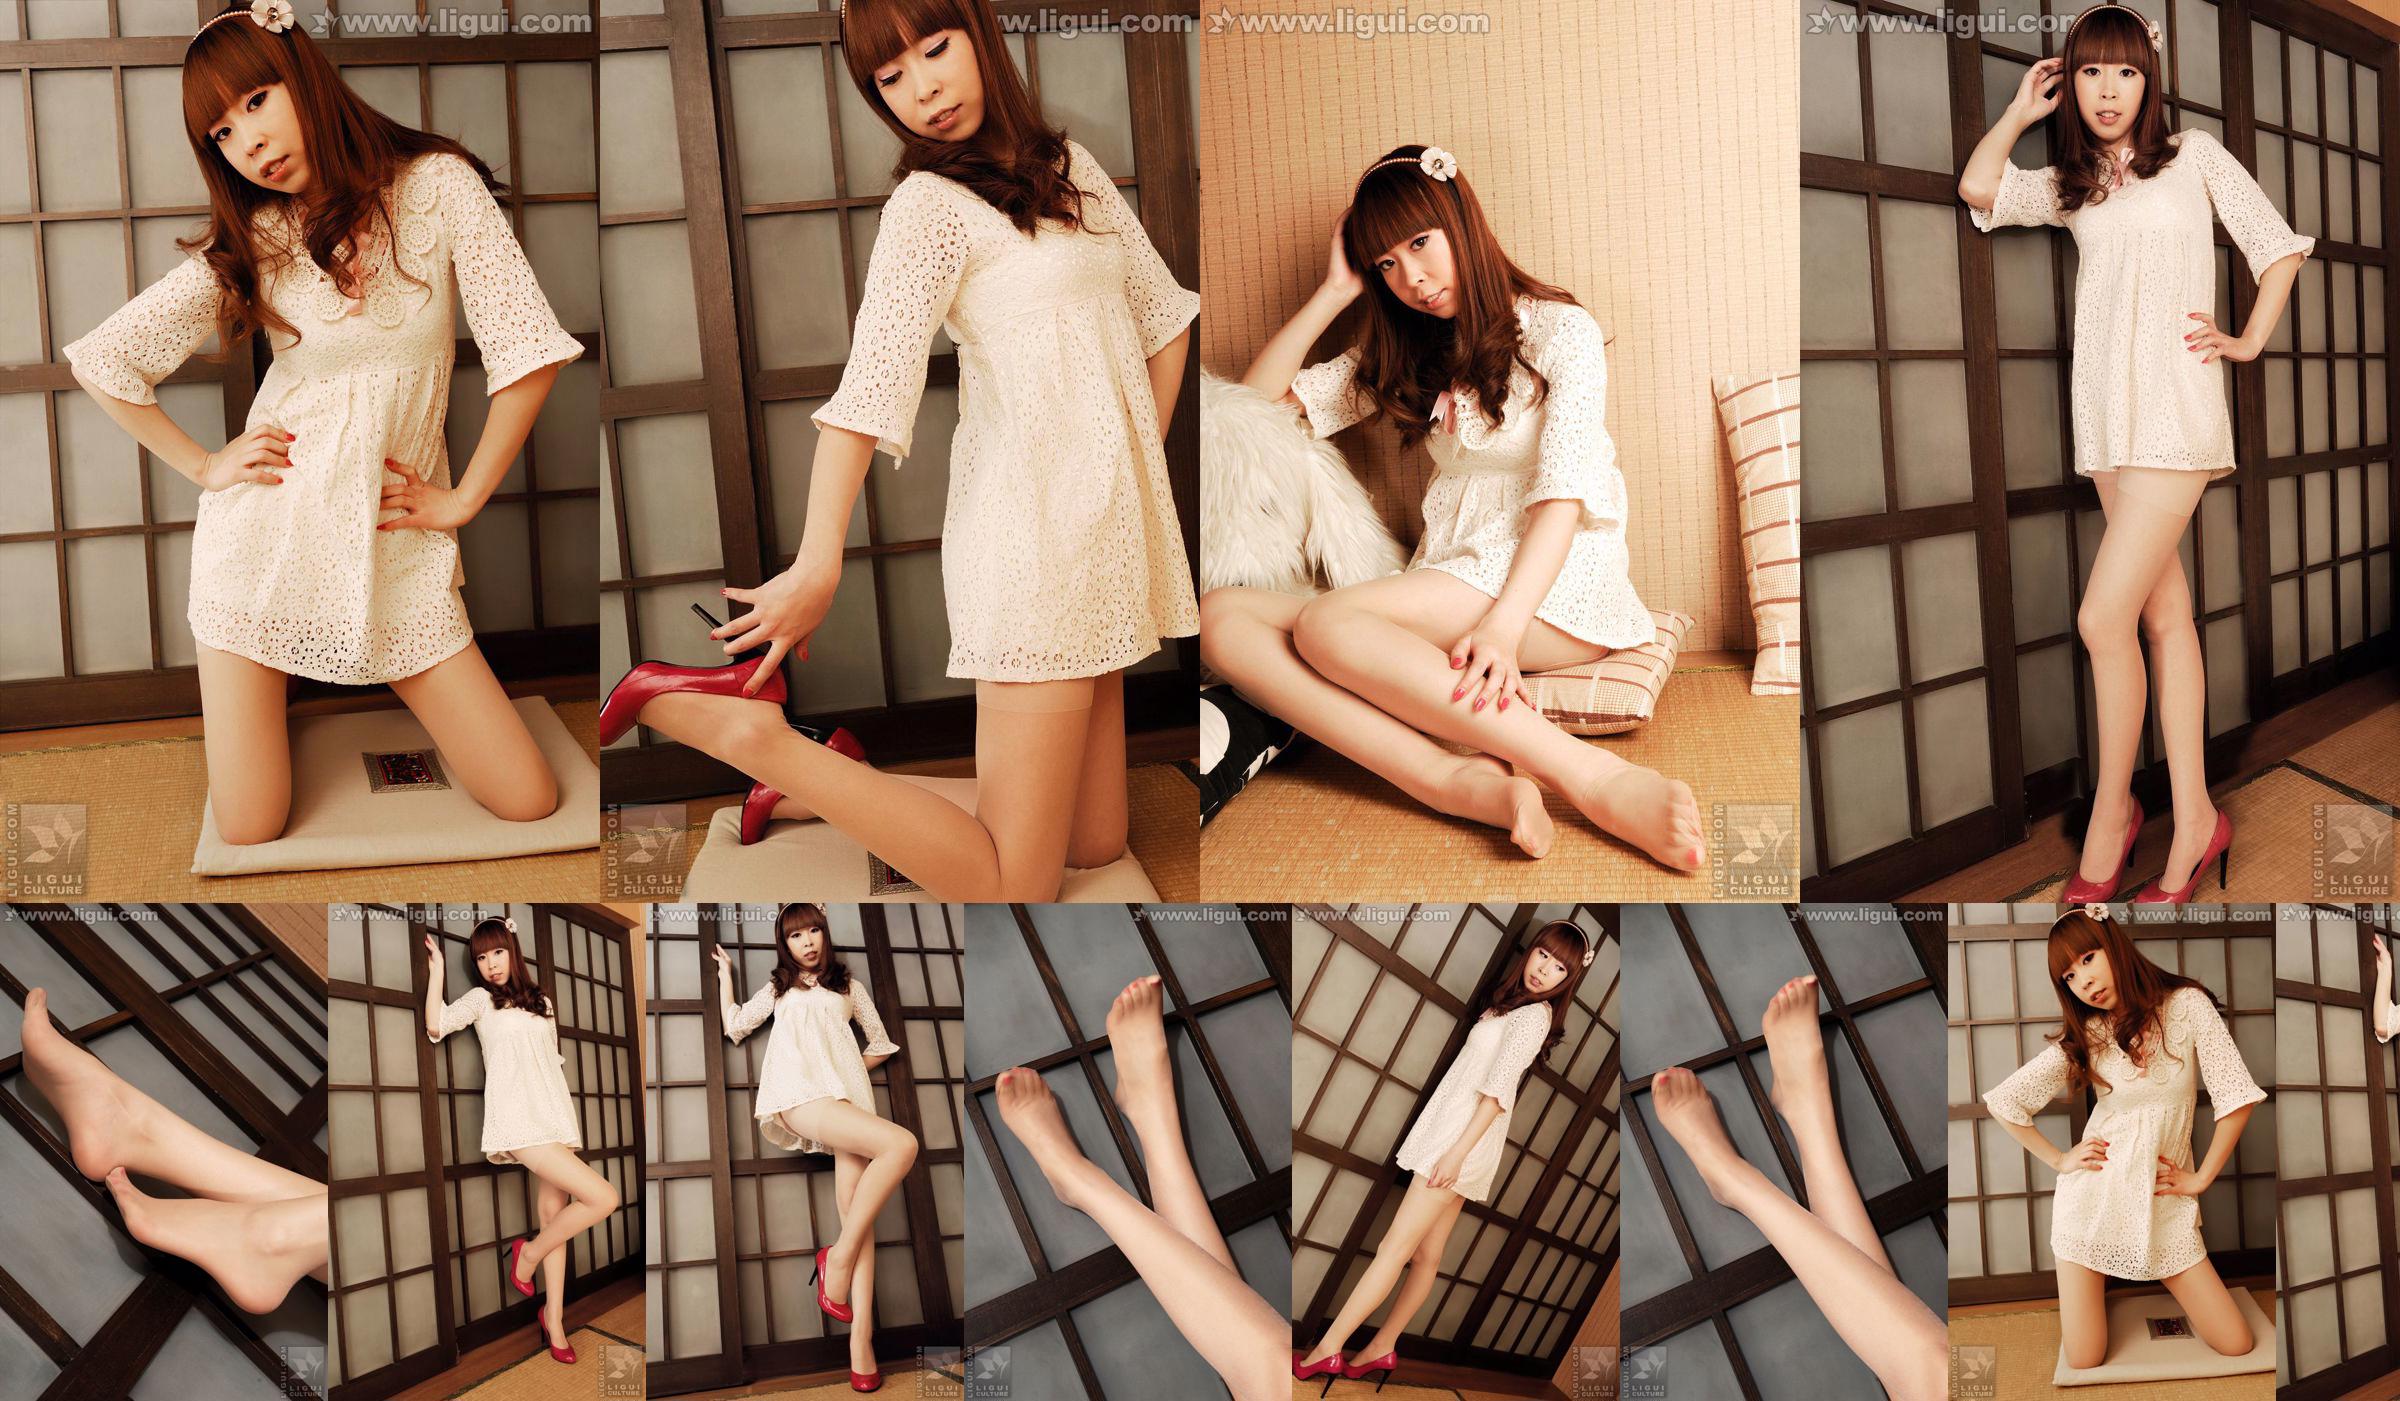 Modelo Vikcy "La tentación del estilo japonés" [丽 柜 LiGui] Fotos de piernas hermosas y pie de jade No.e94c29 Página 1